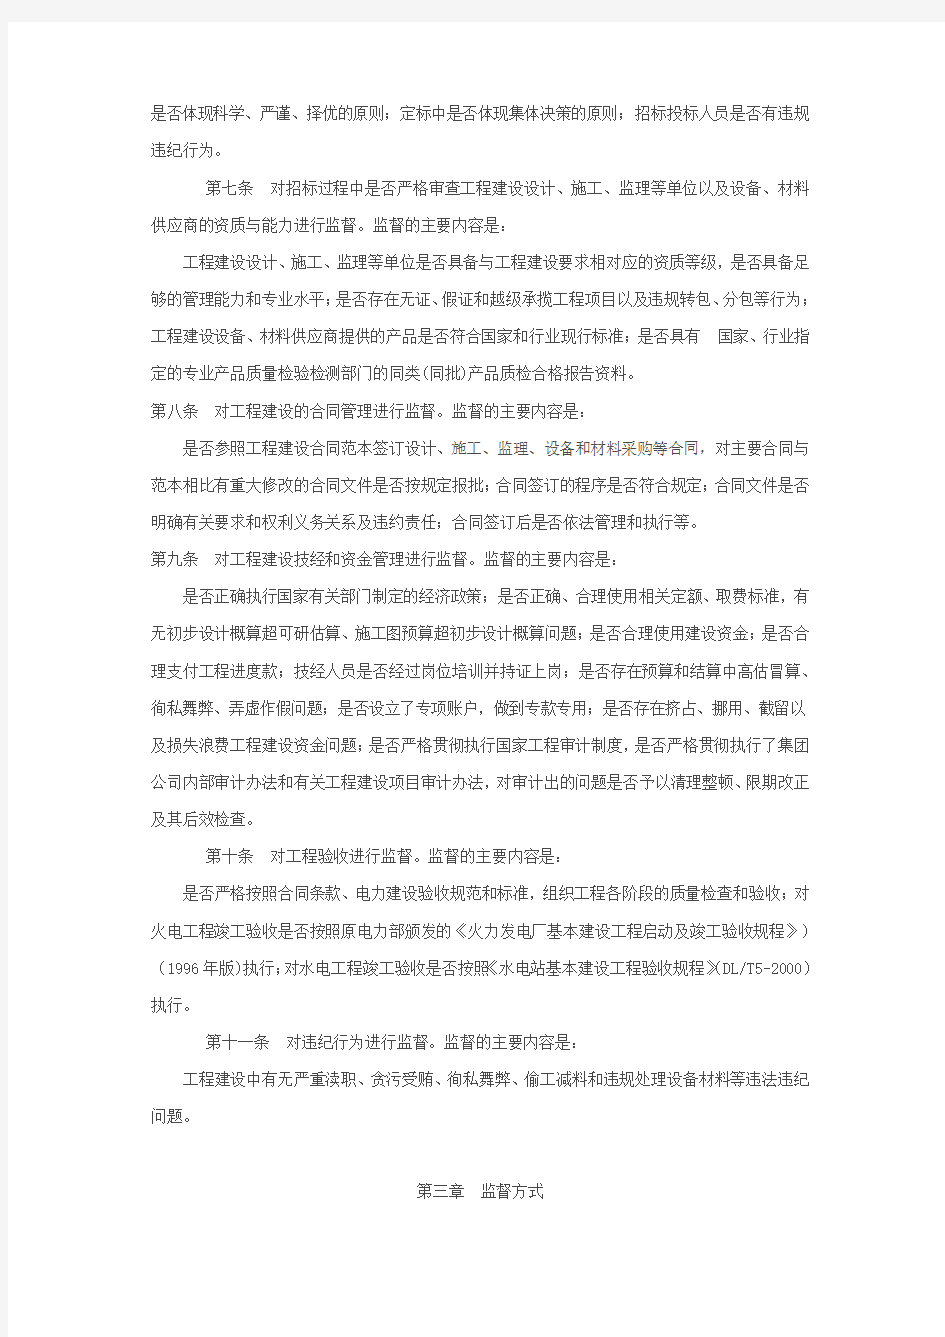 中国华电集团公司工程施工建设管理监督暂行办法